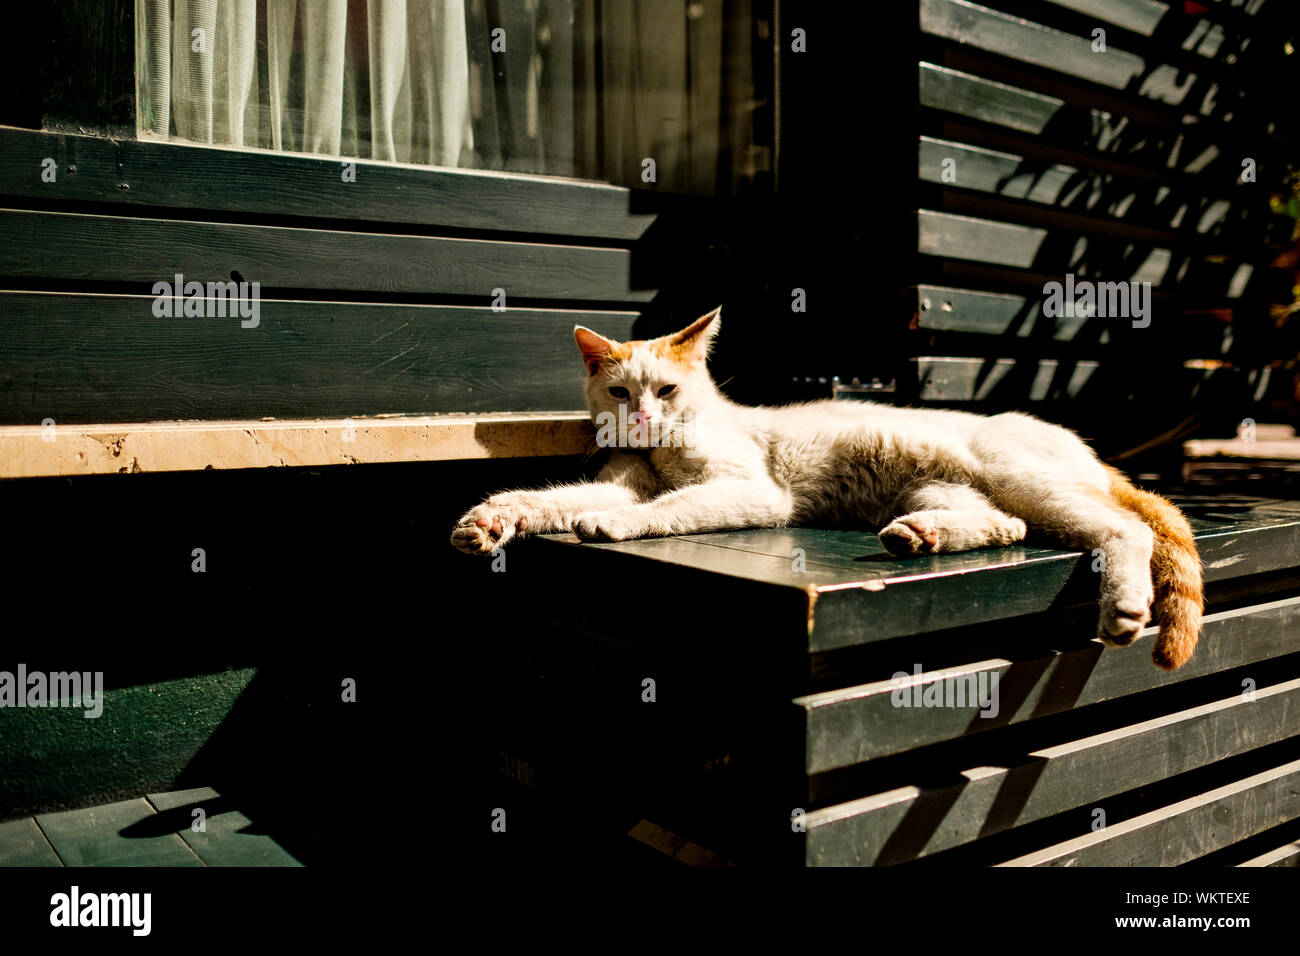 Sunbathing etching of cat in barn window cat